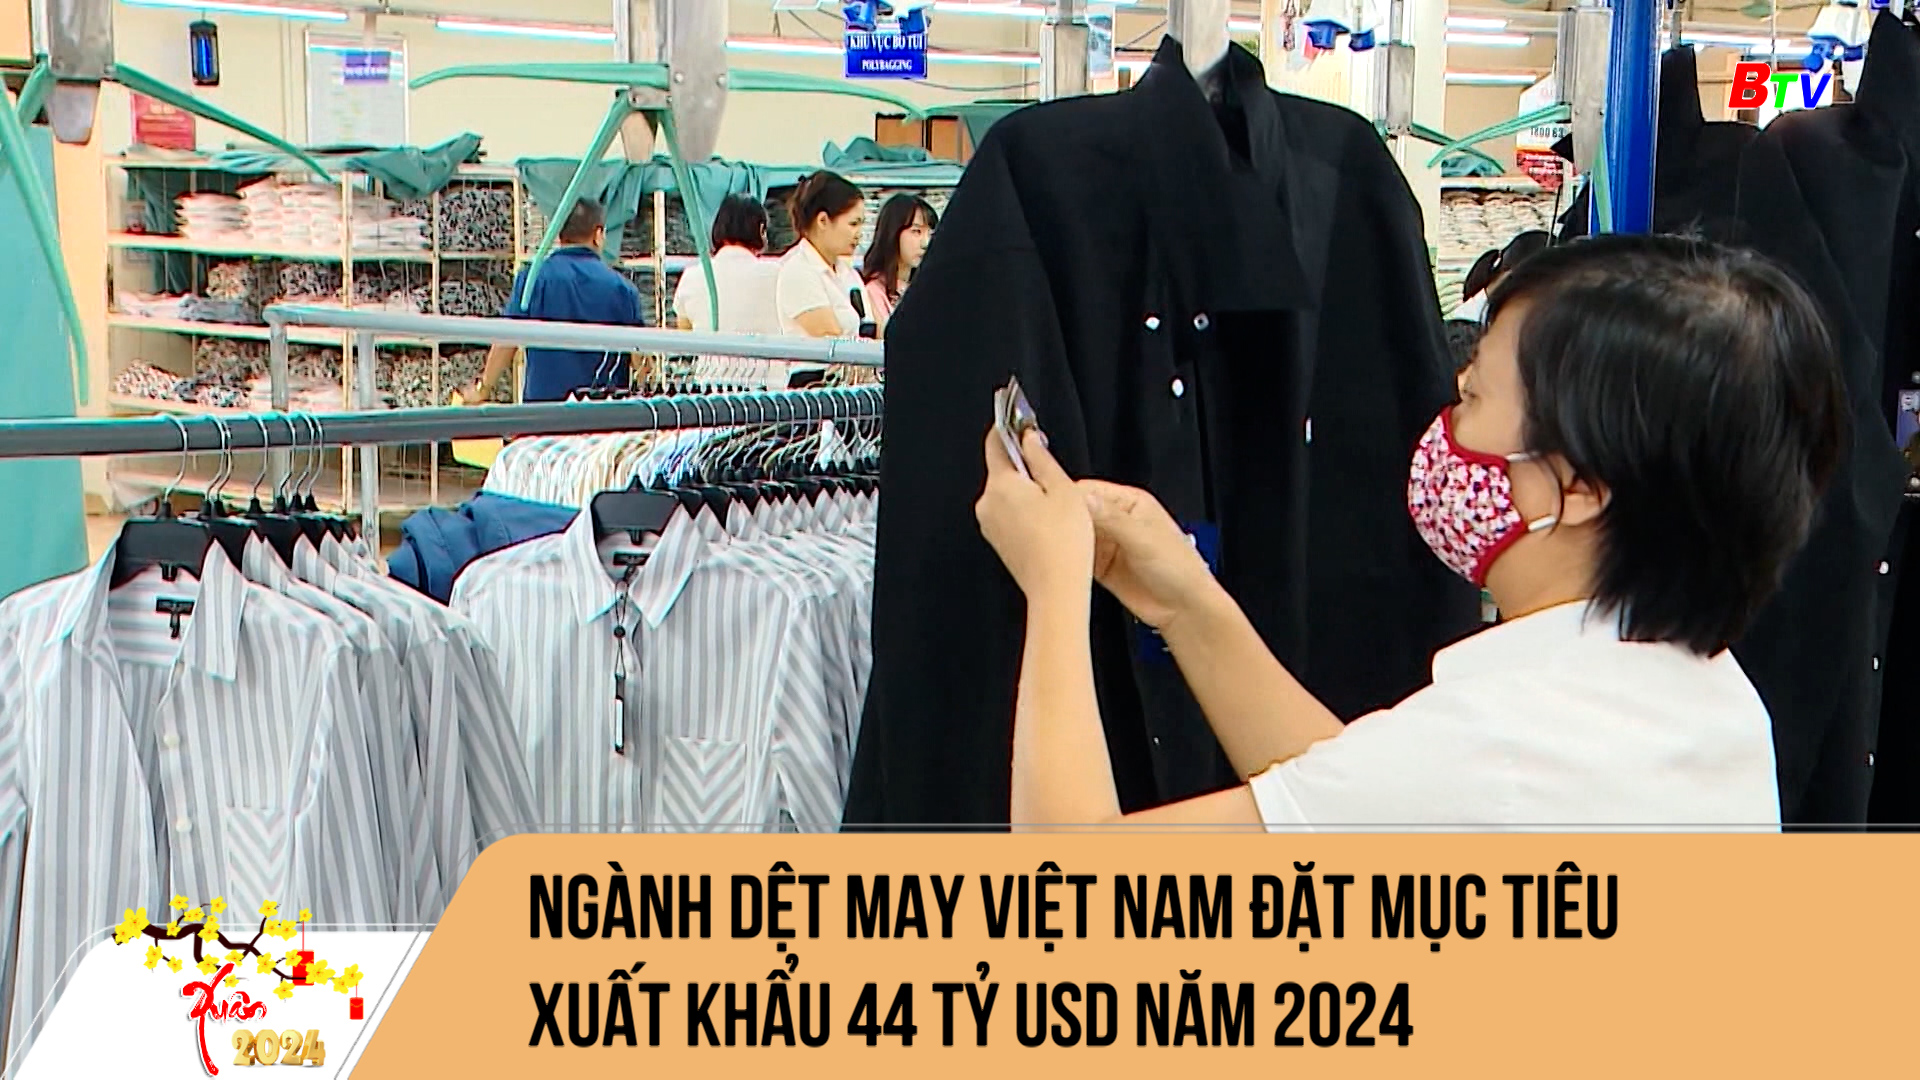 Ngành dệt may Việt Nam đặt mục tiêu xuất khẩu 44 tỷ USD năm 2024